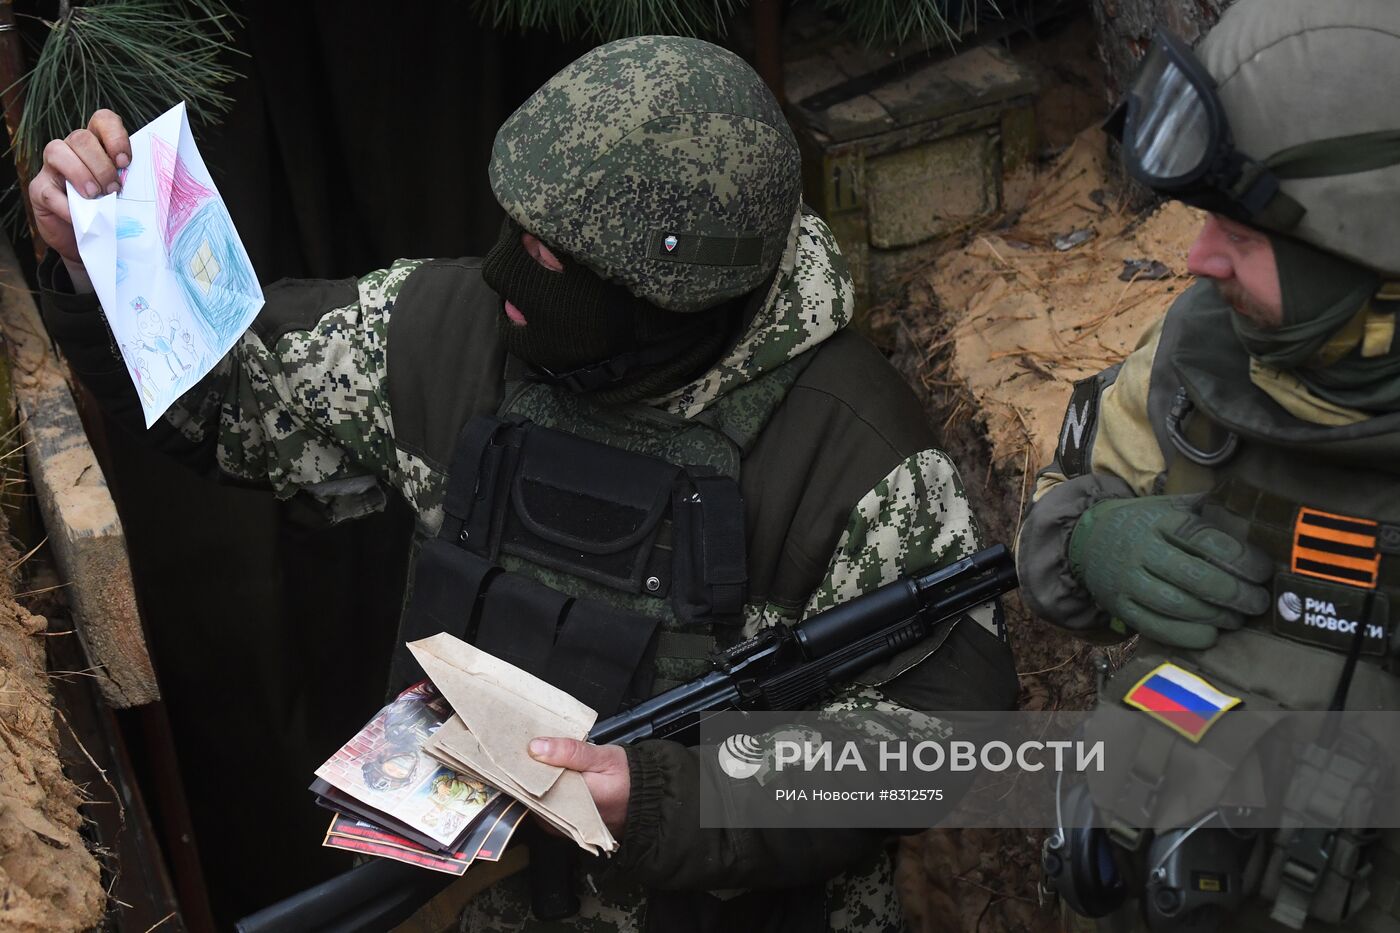 Журналисты РИА Новости передали призванным в рамках частичной мобилизации письма и рисунки детей